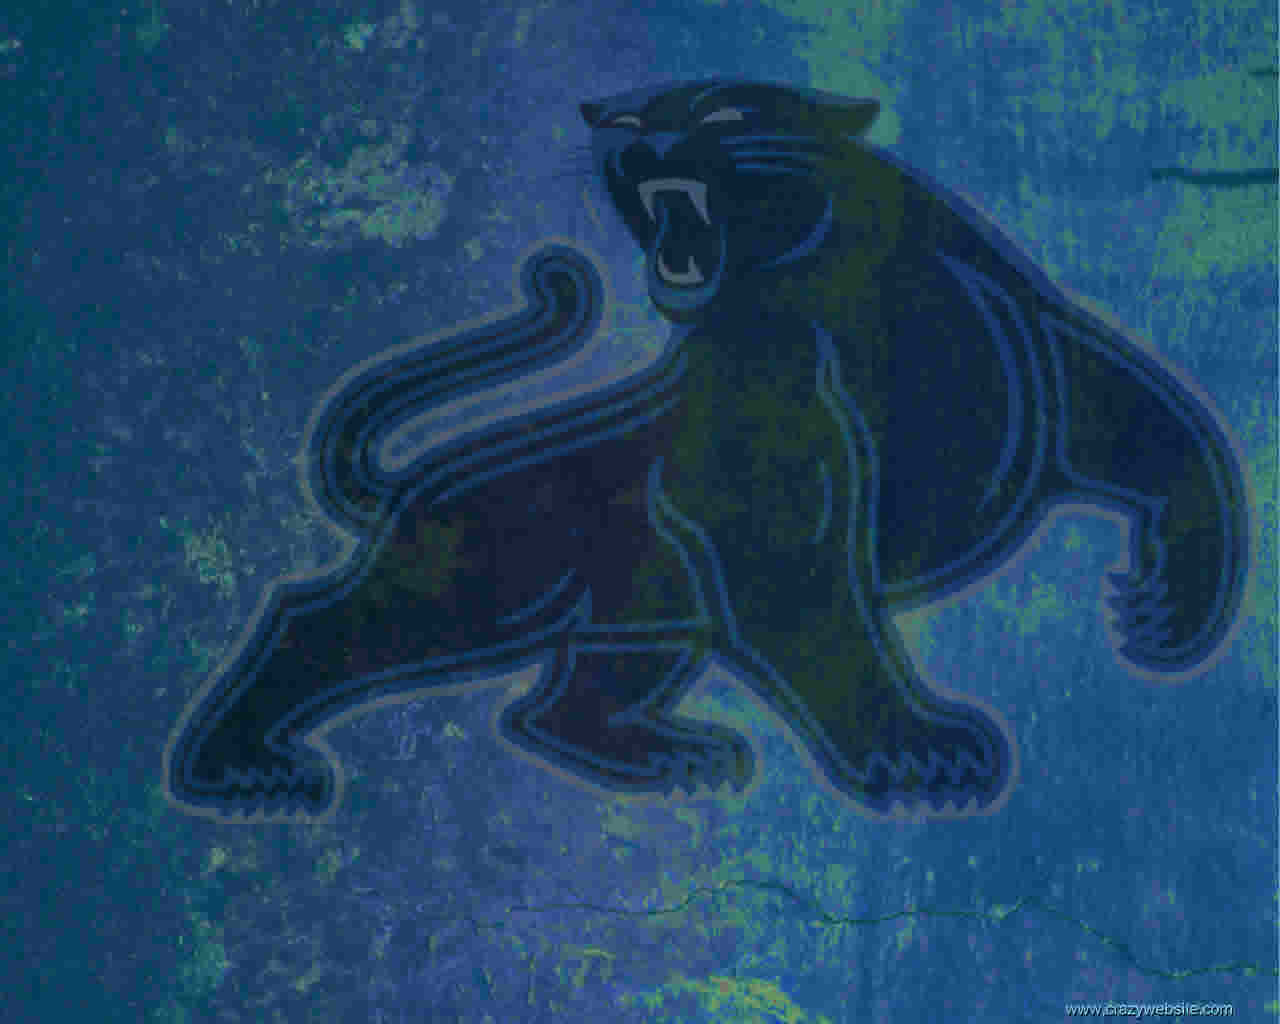 Carolina Panthers Free Nfl Football Wallpapers   vunzooke